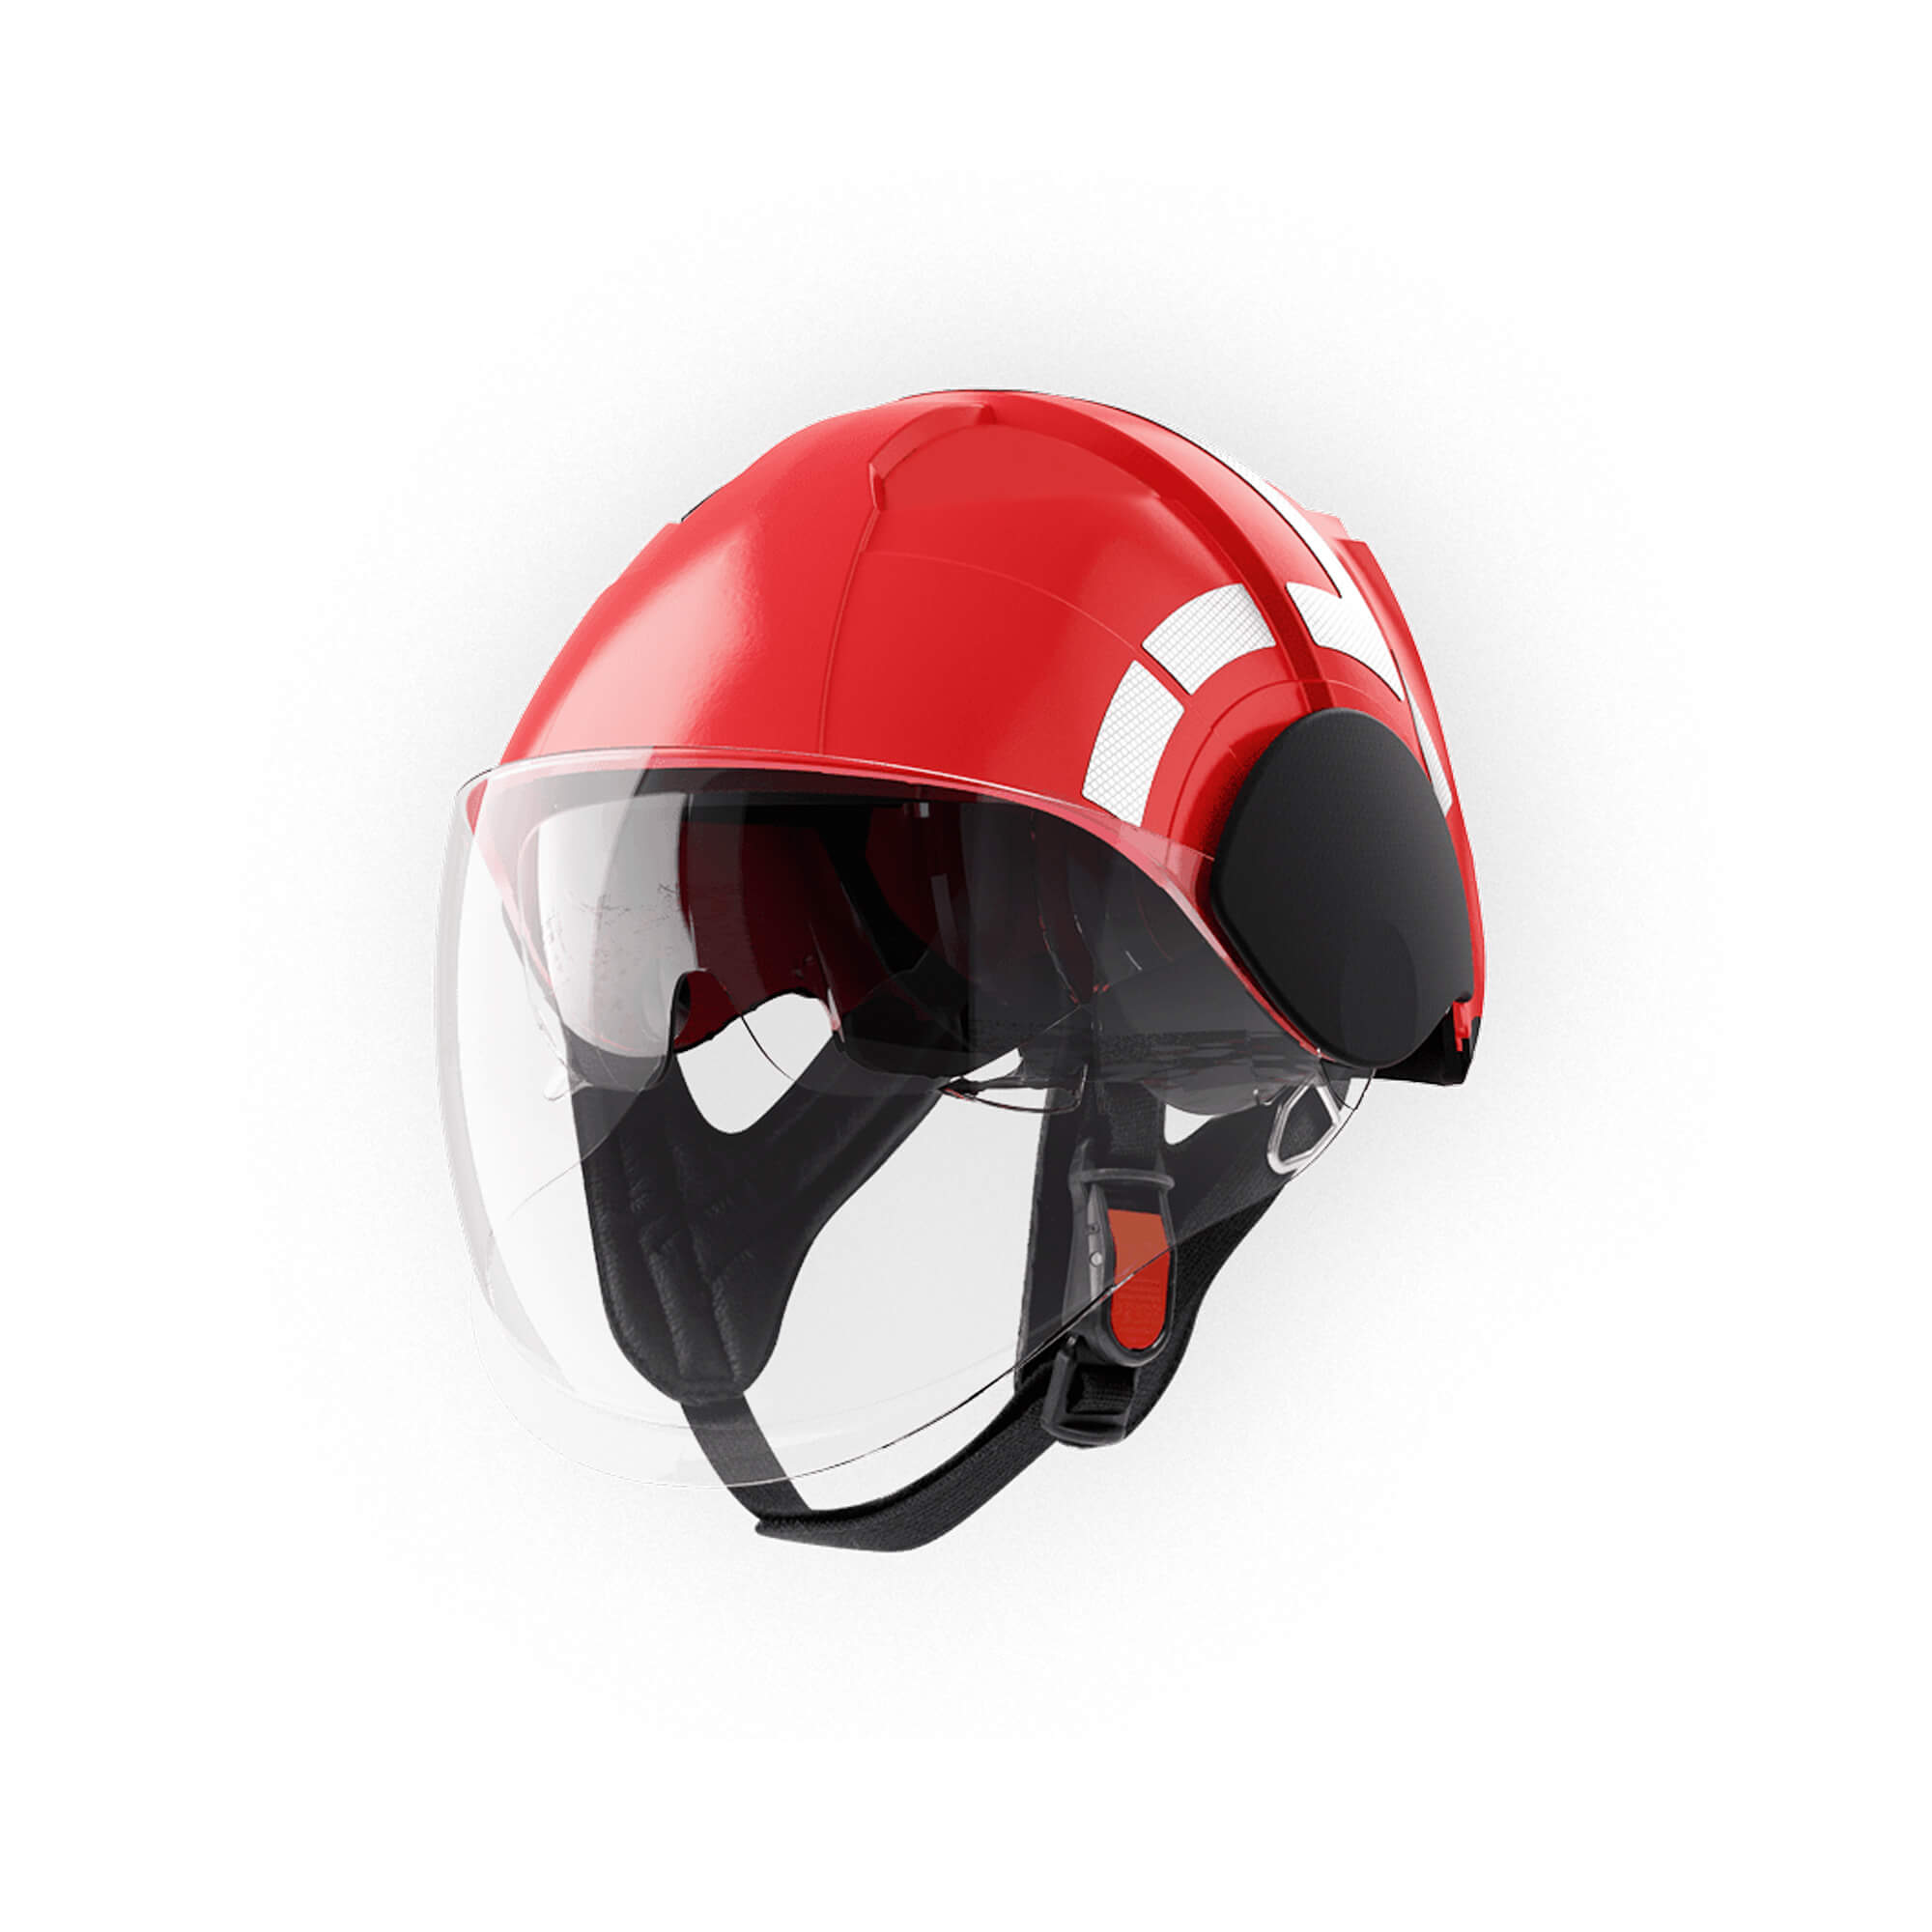 Firefighter helmet PAB Fire Compact